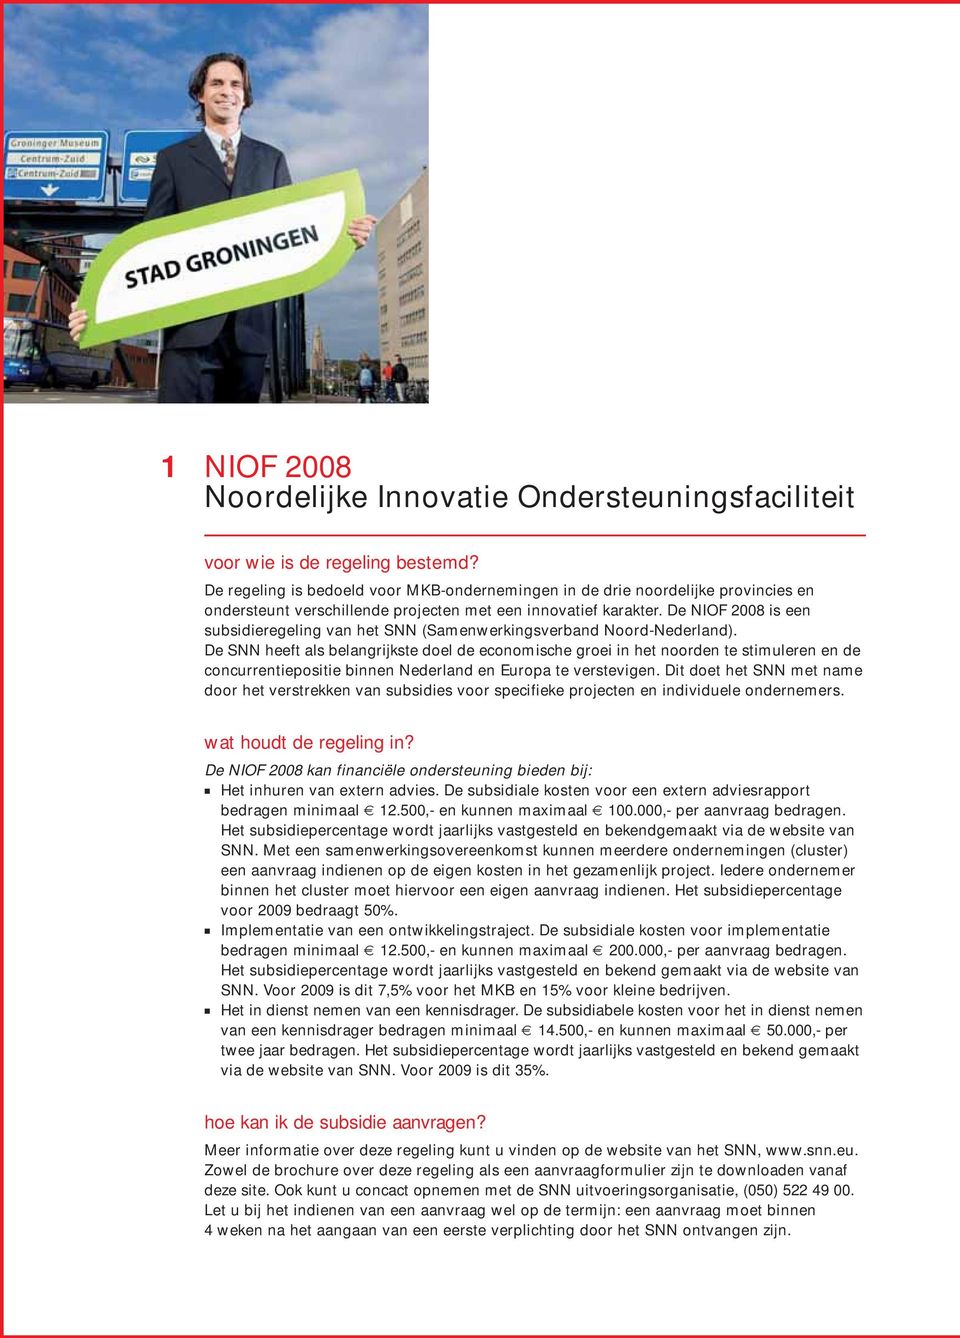 De NIOF 2008 is een subsidieregeling van het SNN (Samenwerkingsverband Noord-Nederland).